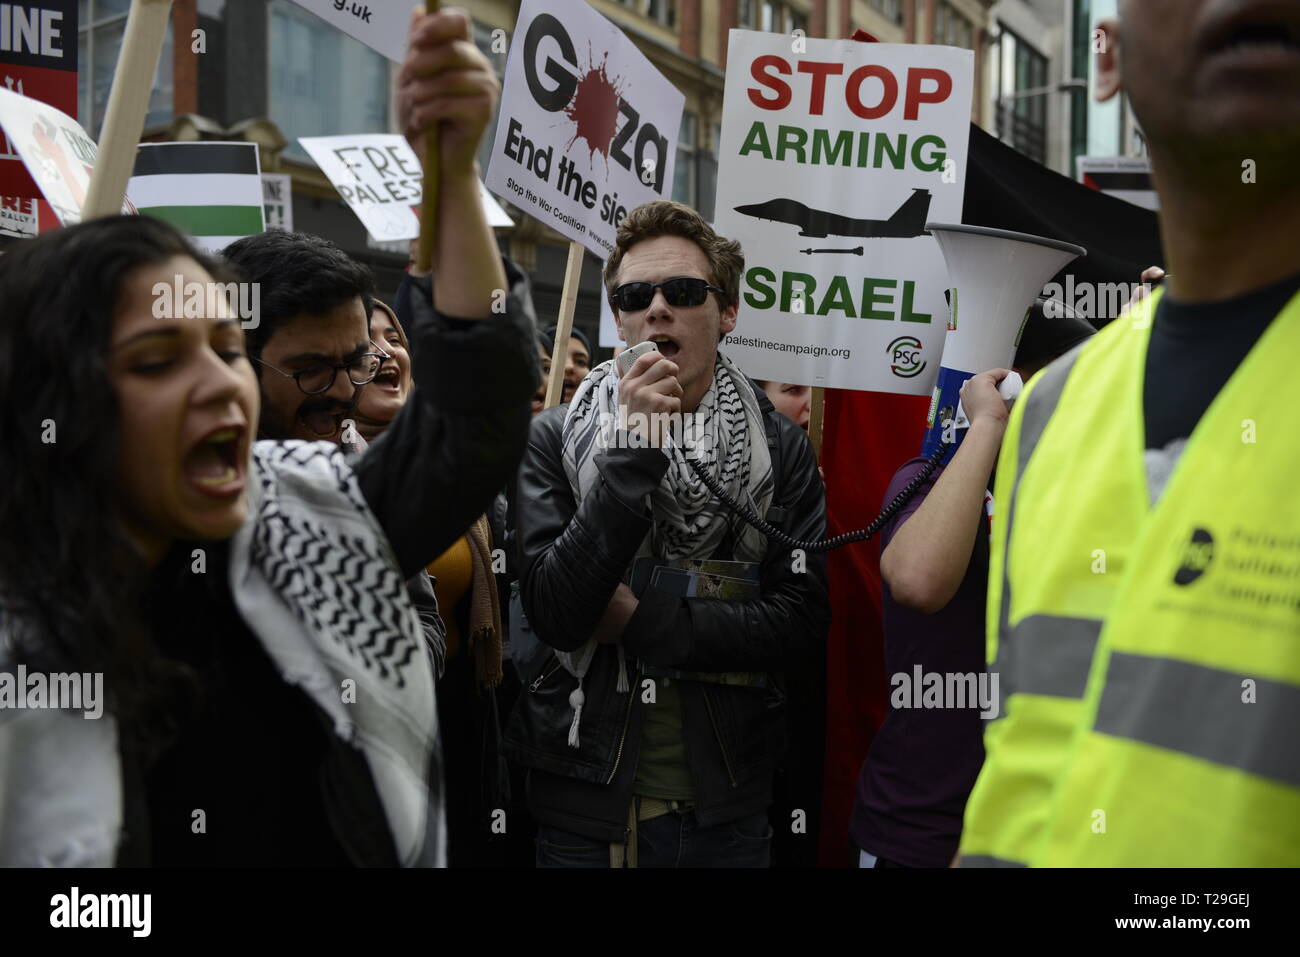 Manifestant sont vus scandant des slogans au cours de l'exister, résister, retour Rassemblement pour la Palestine à Londres. Les gens se rassemblent à l'extérieur de l'ambassade israélienne à Londres pour manifester contre le gouvernement israélien, et pour exiger le respect des droits fondamentaux des Palestiniens d'exister, de résister et de retour. Les Palestiniens réclament des protestations globales pour soutenir leur droit de revenir dans leurs villages. Rassemblement avait été organisé par la Campagne de Solidarité Palestine, Stop the War Coalition, le Forum palestinien en Grande-Bretagne, les amis d'Al- Aqsa, et l'Association des musulmans de Grande-Bretagne. Banque D'Images